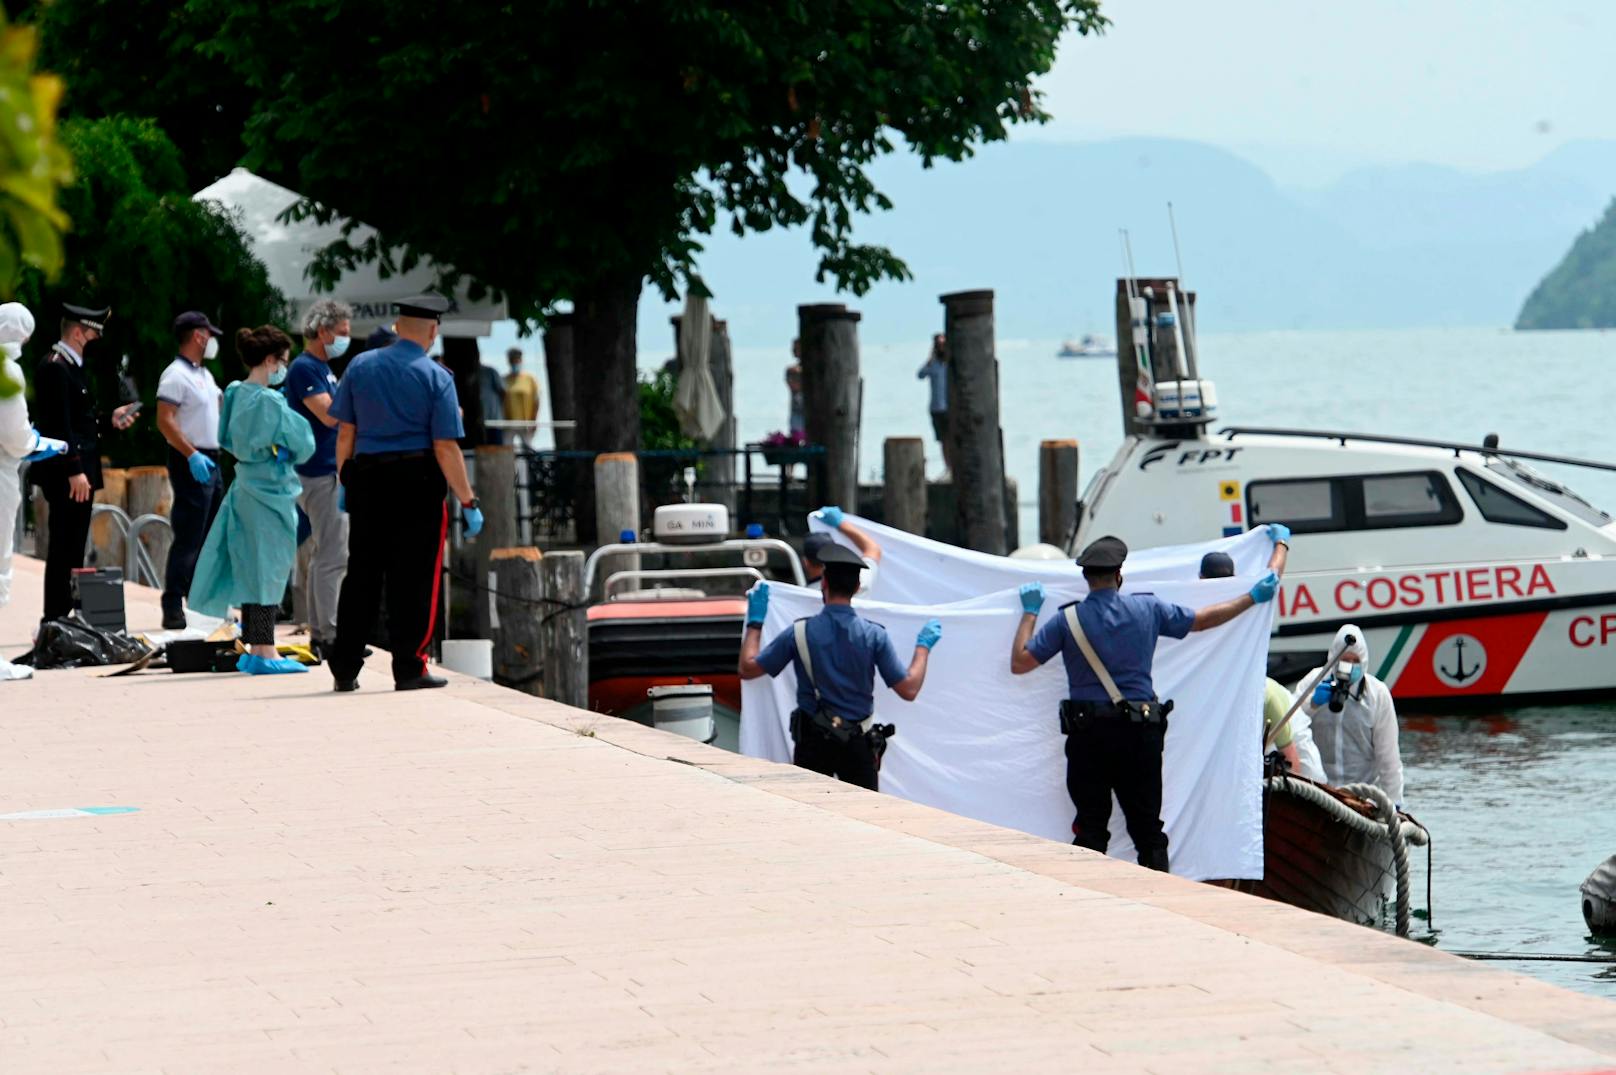 Die italienische Forensiker untersuchen den Schaden an dem Boot, auf dem ein italienisches Paar ums Leben kam.